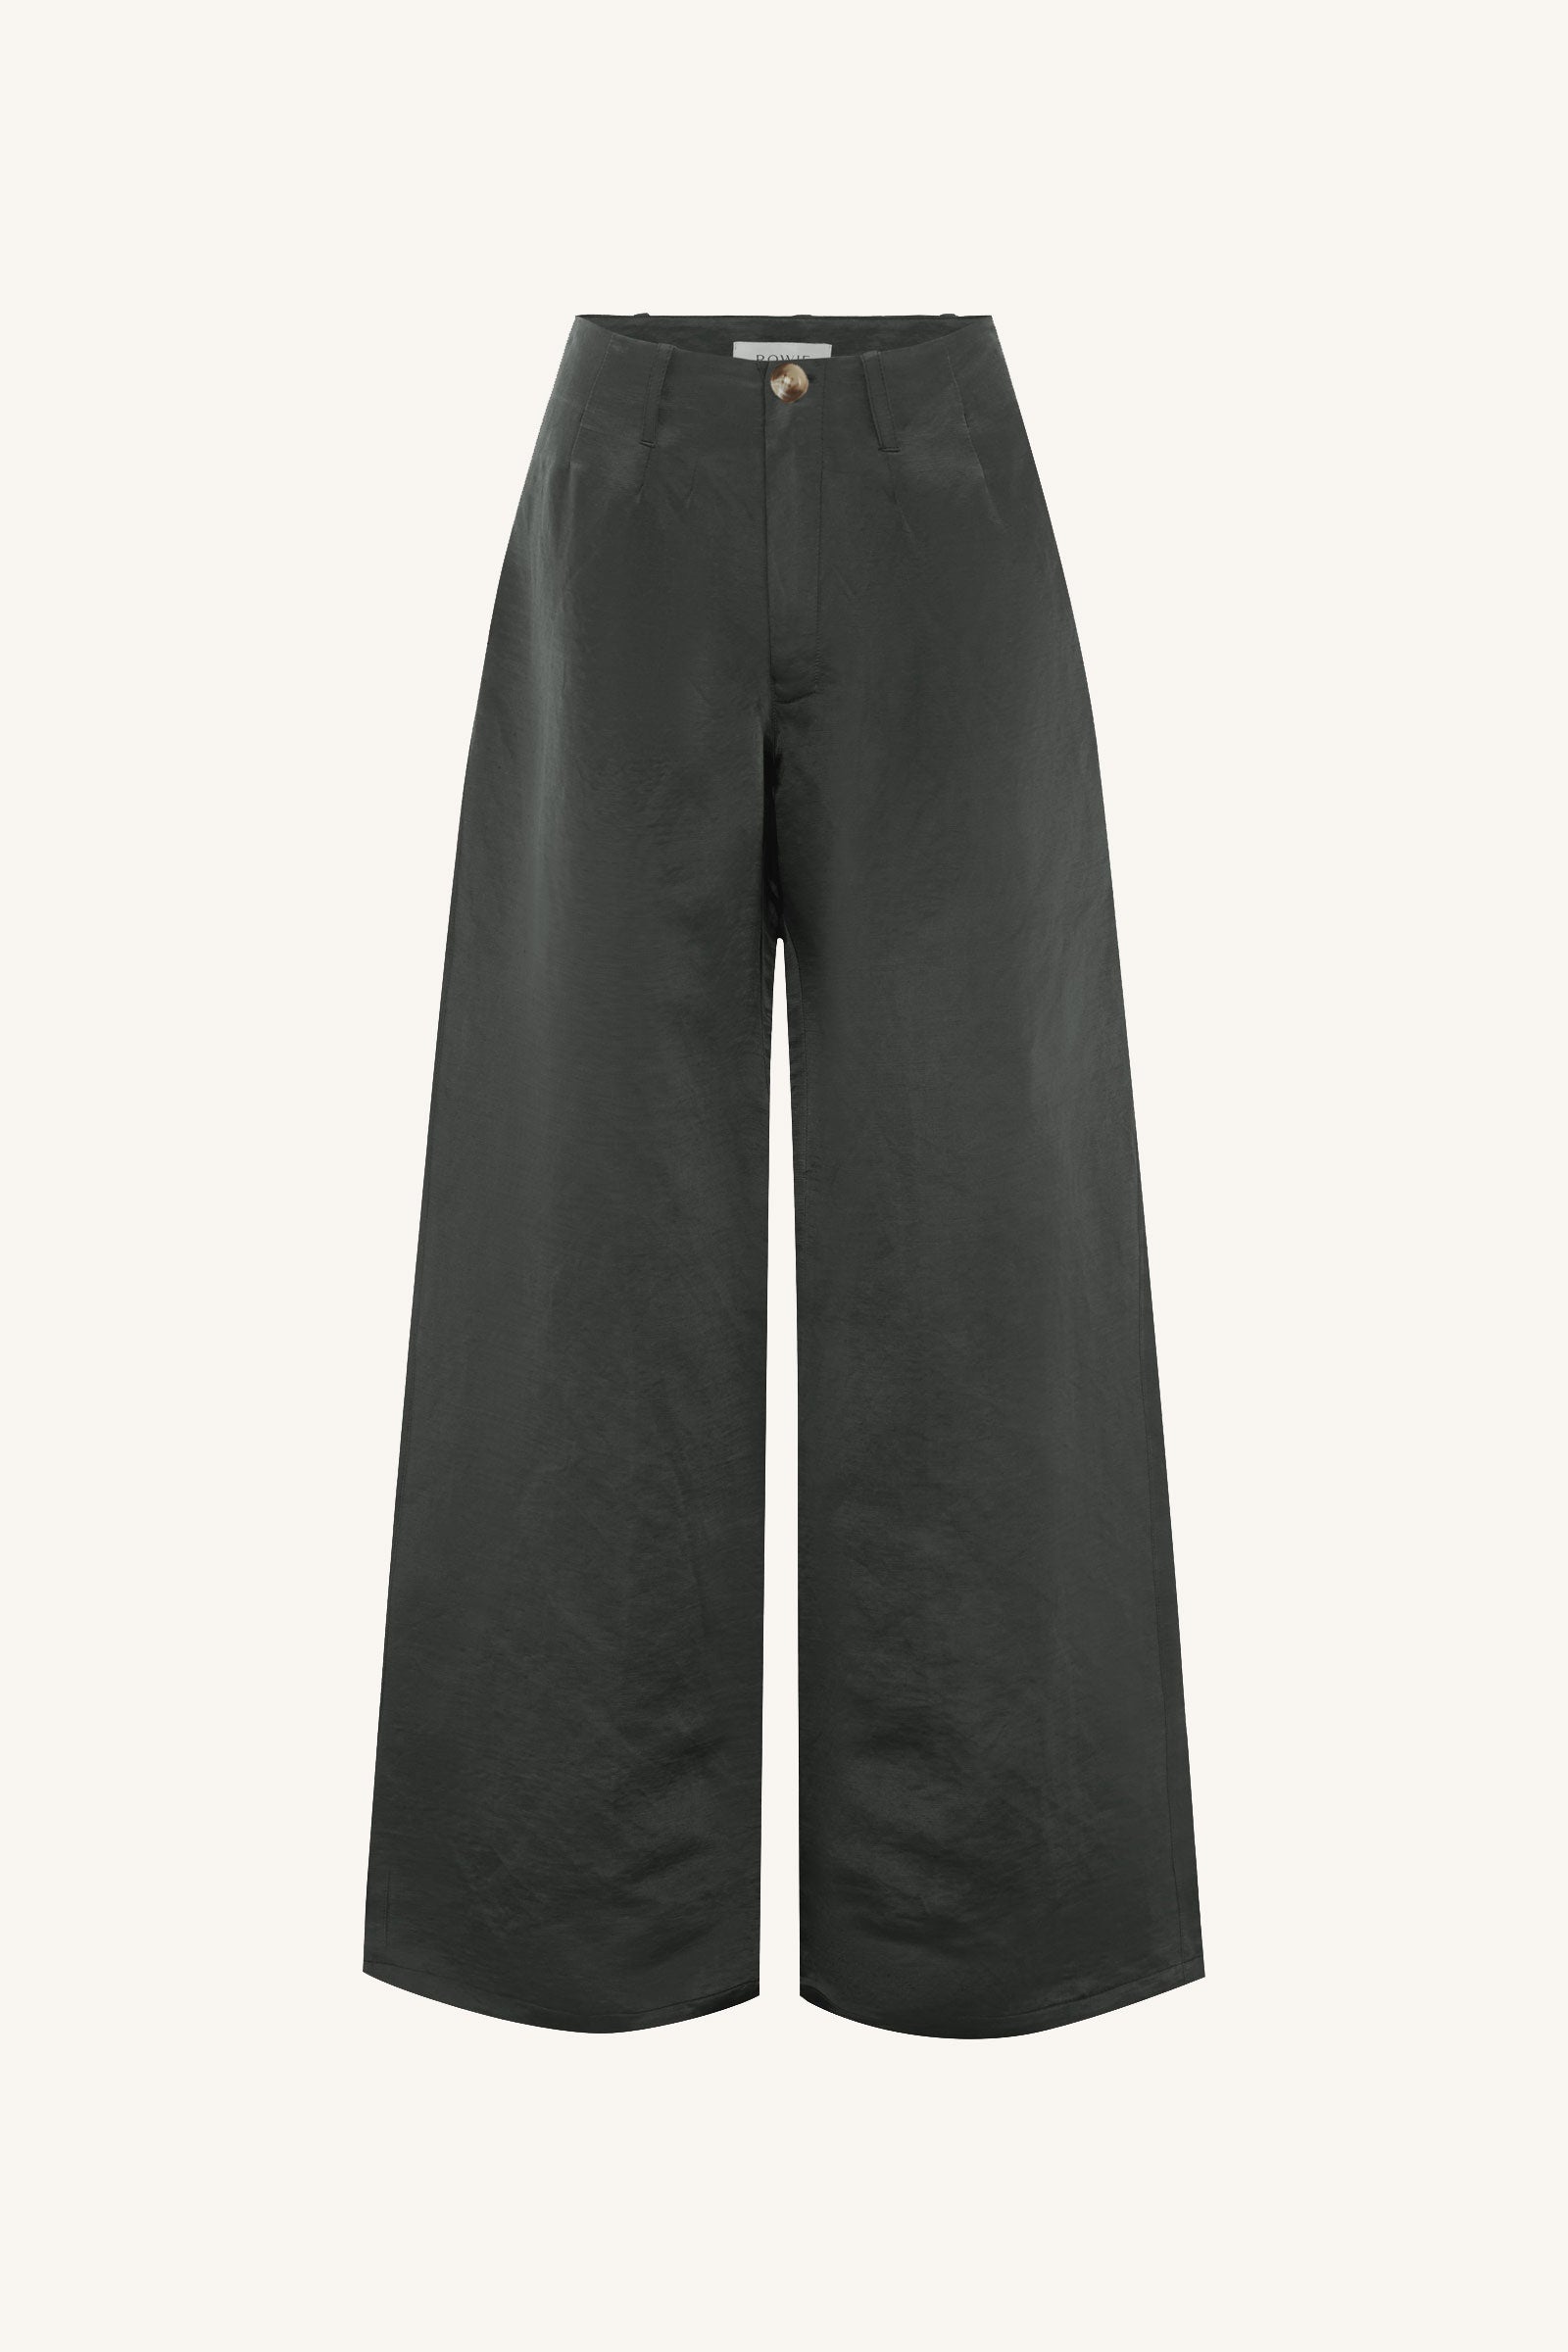 Carlotta Silk Linen Wide Pant // Iron